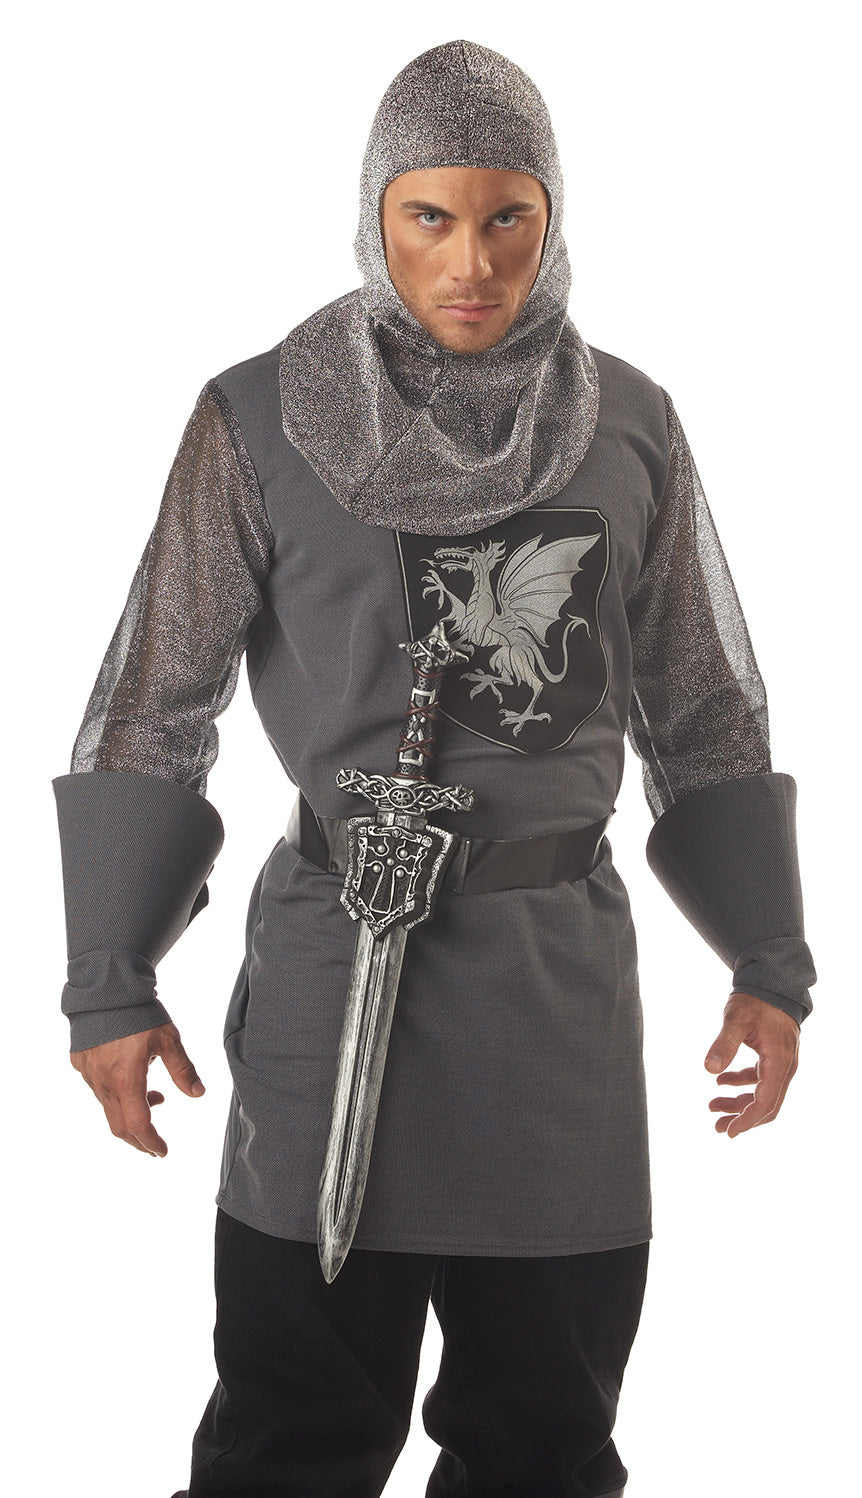 Knight Sword w/ Crusader Sheath